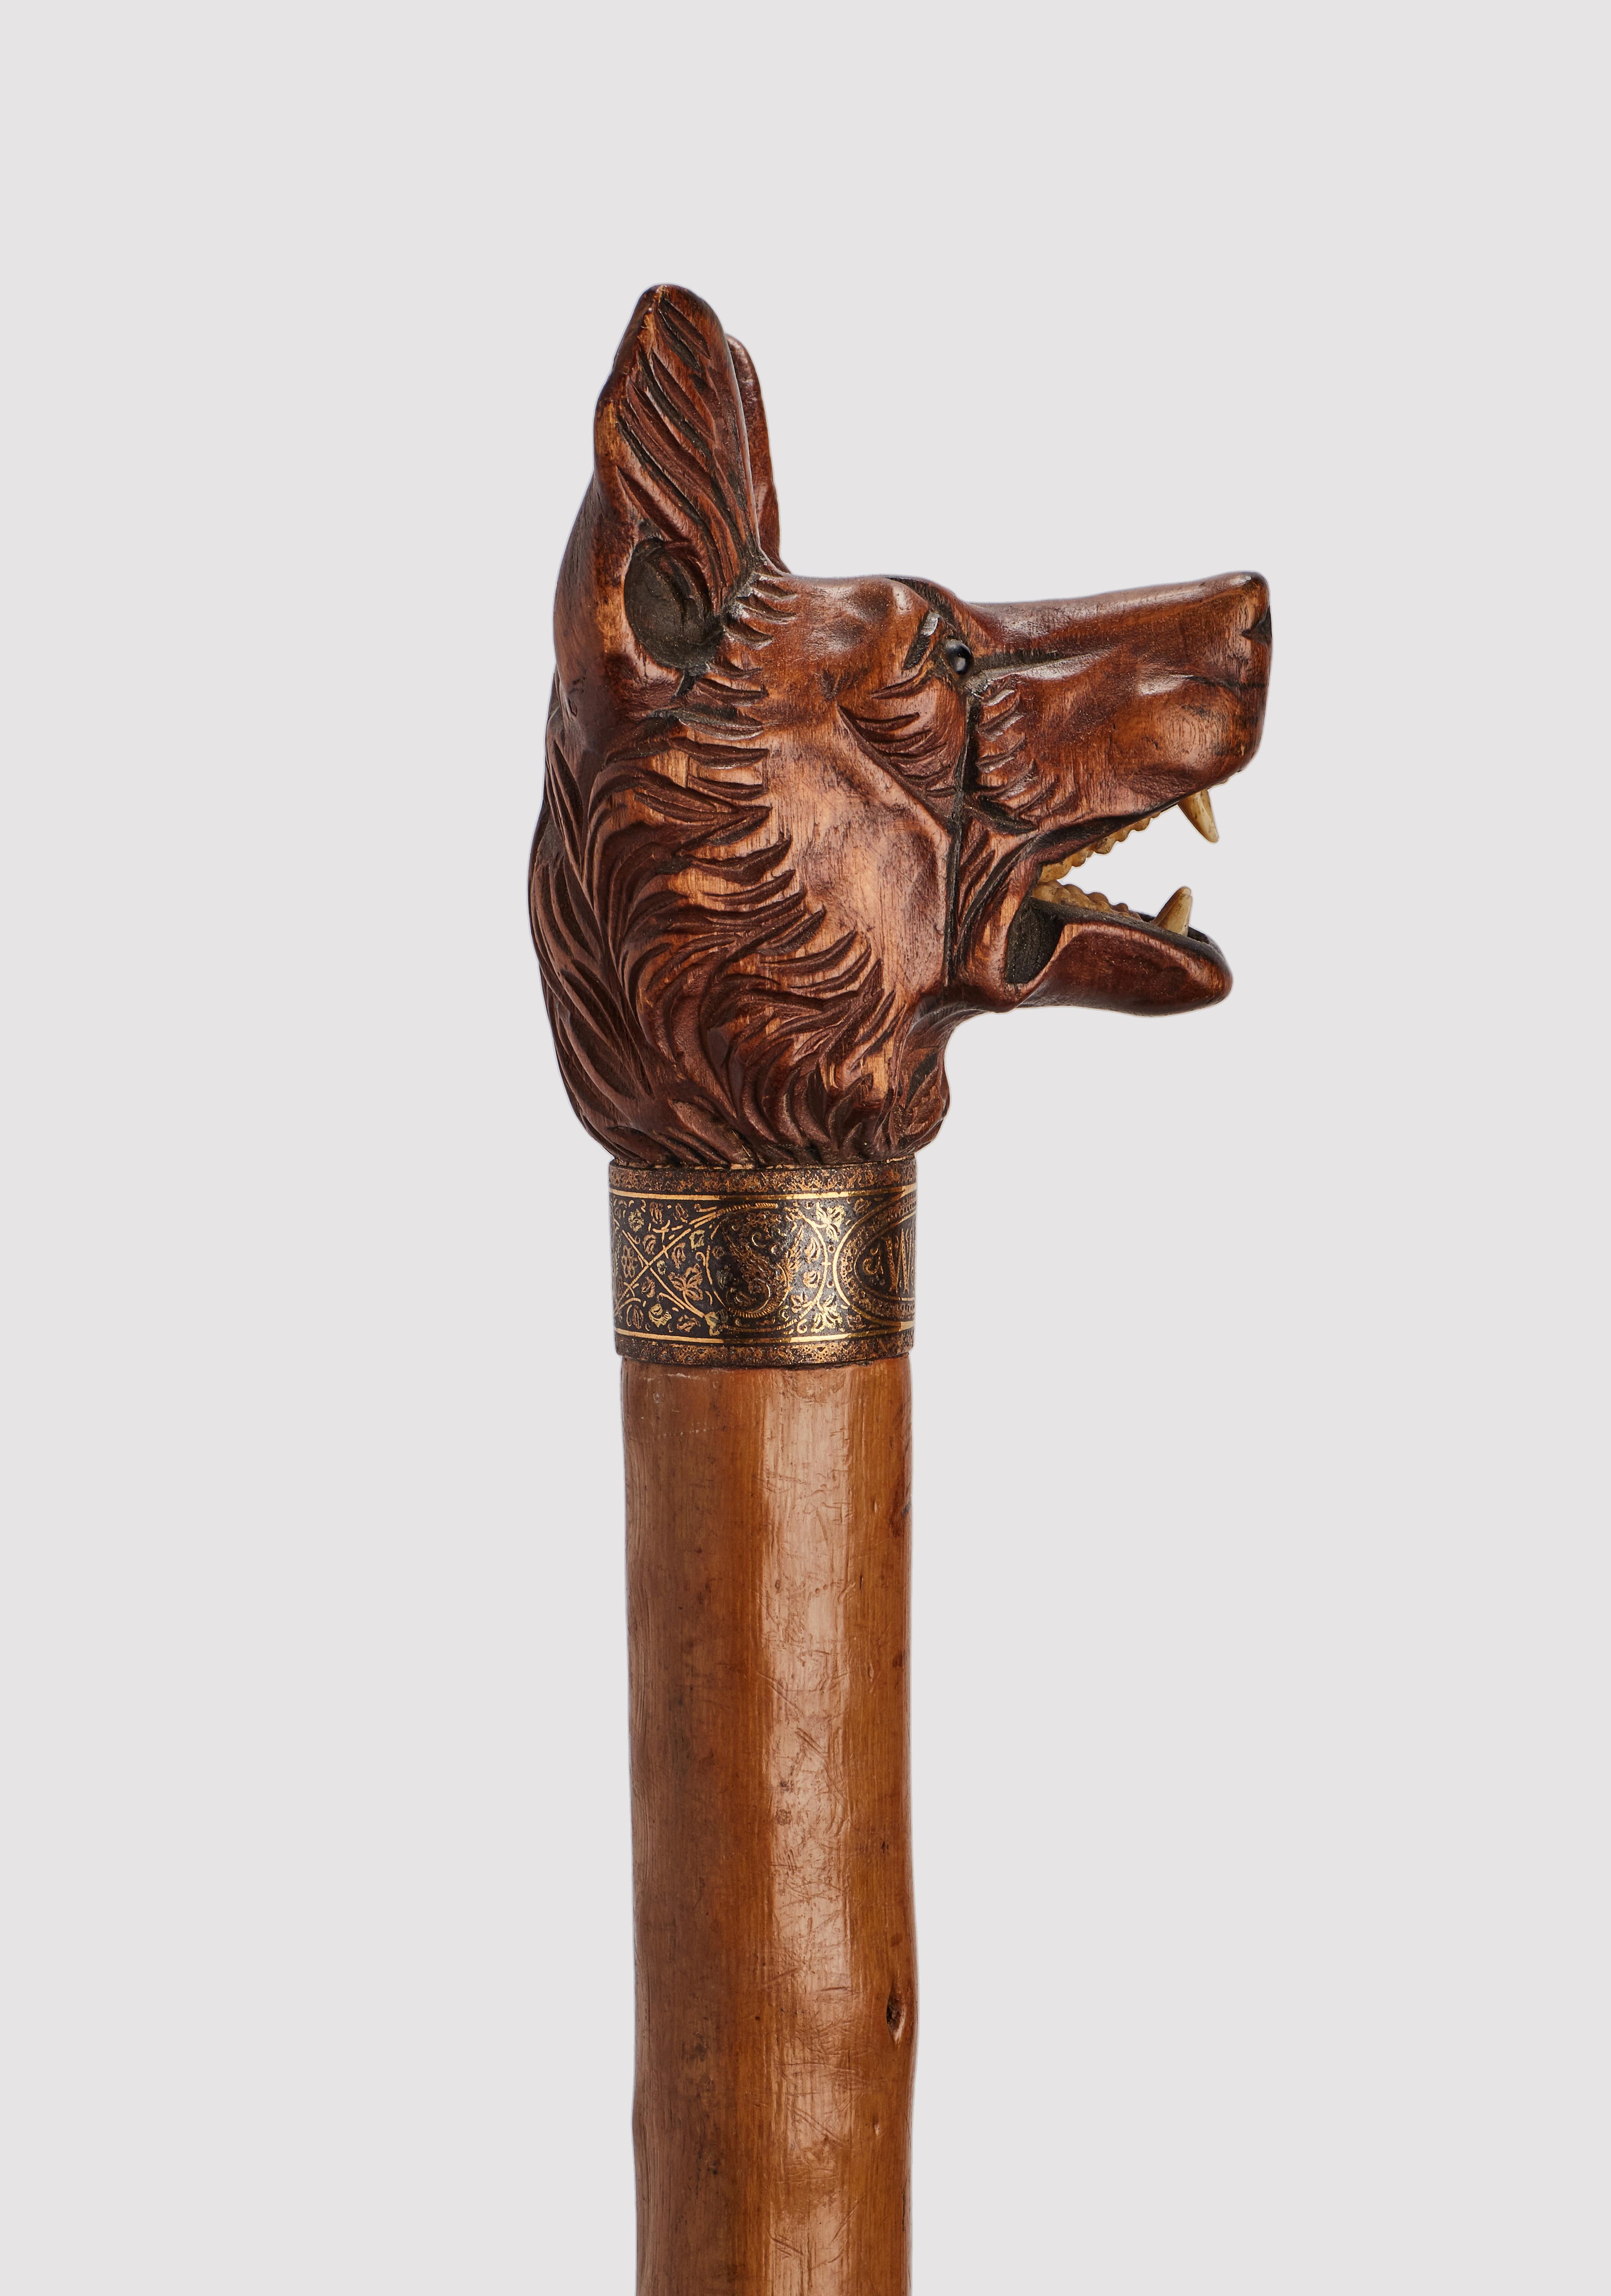 Canne d'art populaire : manche en bois sculpté représentant une tête de chien de berger allemand, yeux en verre sulfureux, dents en os. Manche en bois d'aubépine et virole en métal. Anneau en argent doré. Allemagne vers 1890.